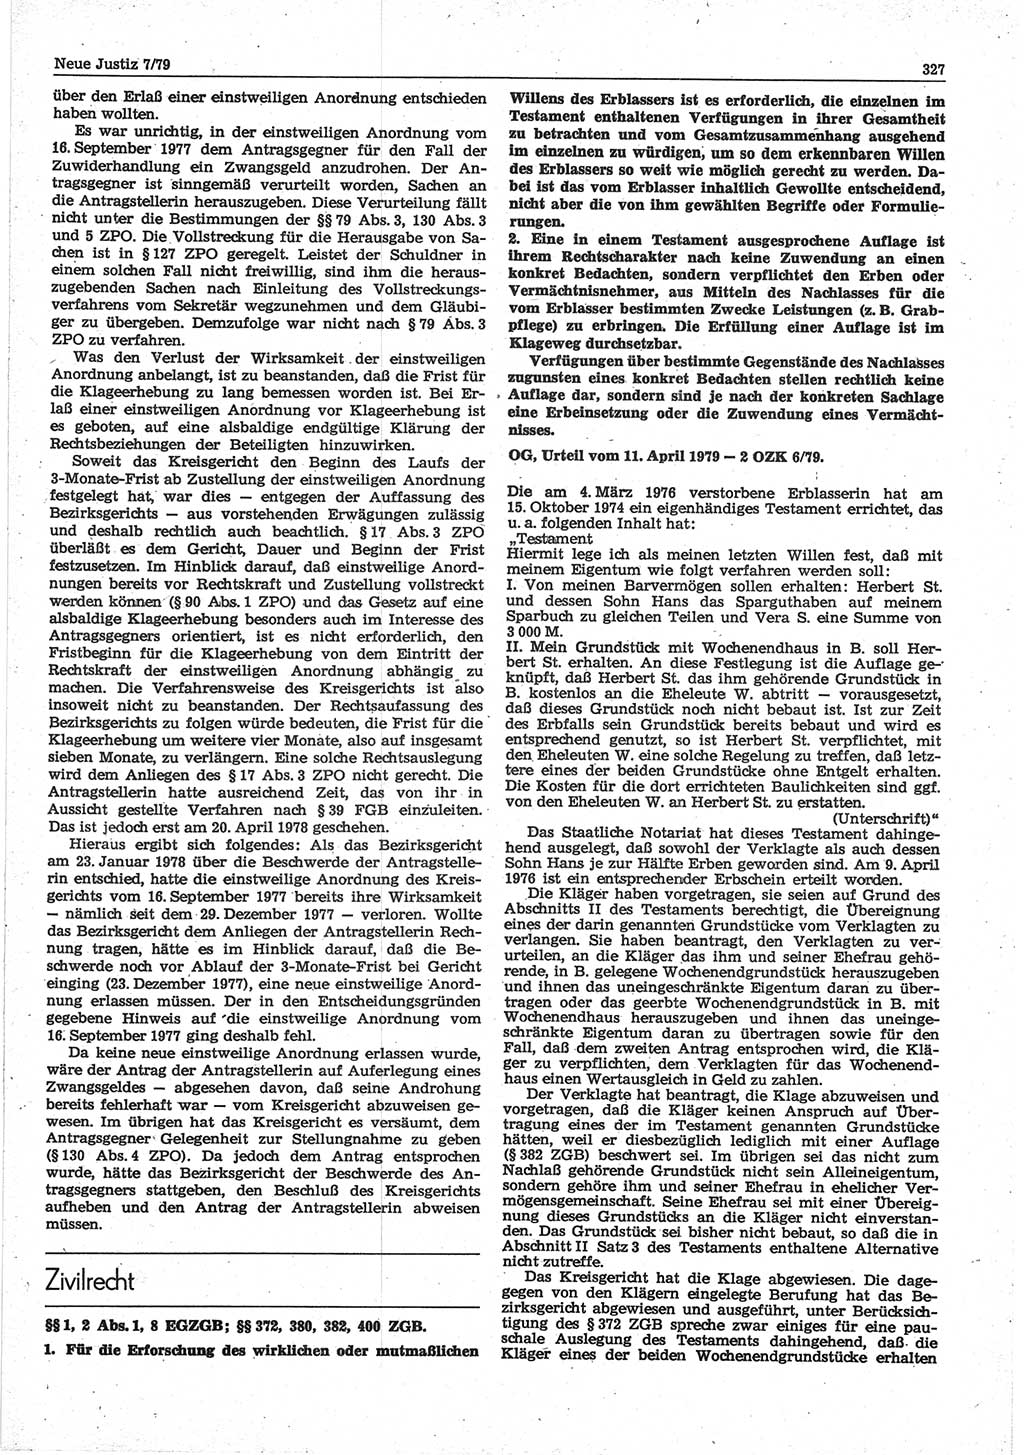 Neue Justiz (NJ), Zeitschrift für sozialistisches Recht und Gesetzlichkeit [Deutsche Demokratische Republik (DDR)], 33. Jahrgang 1979, Seite 327 (NJ DDR 1979, S. 327)